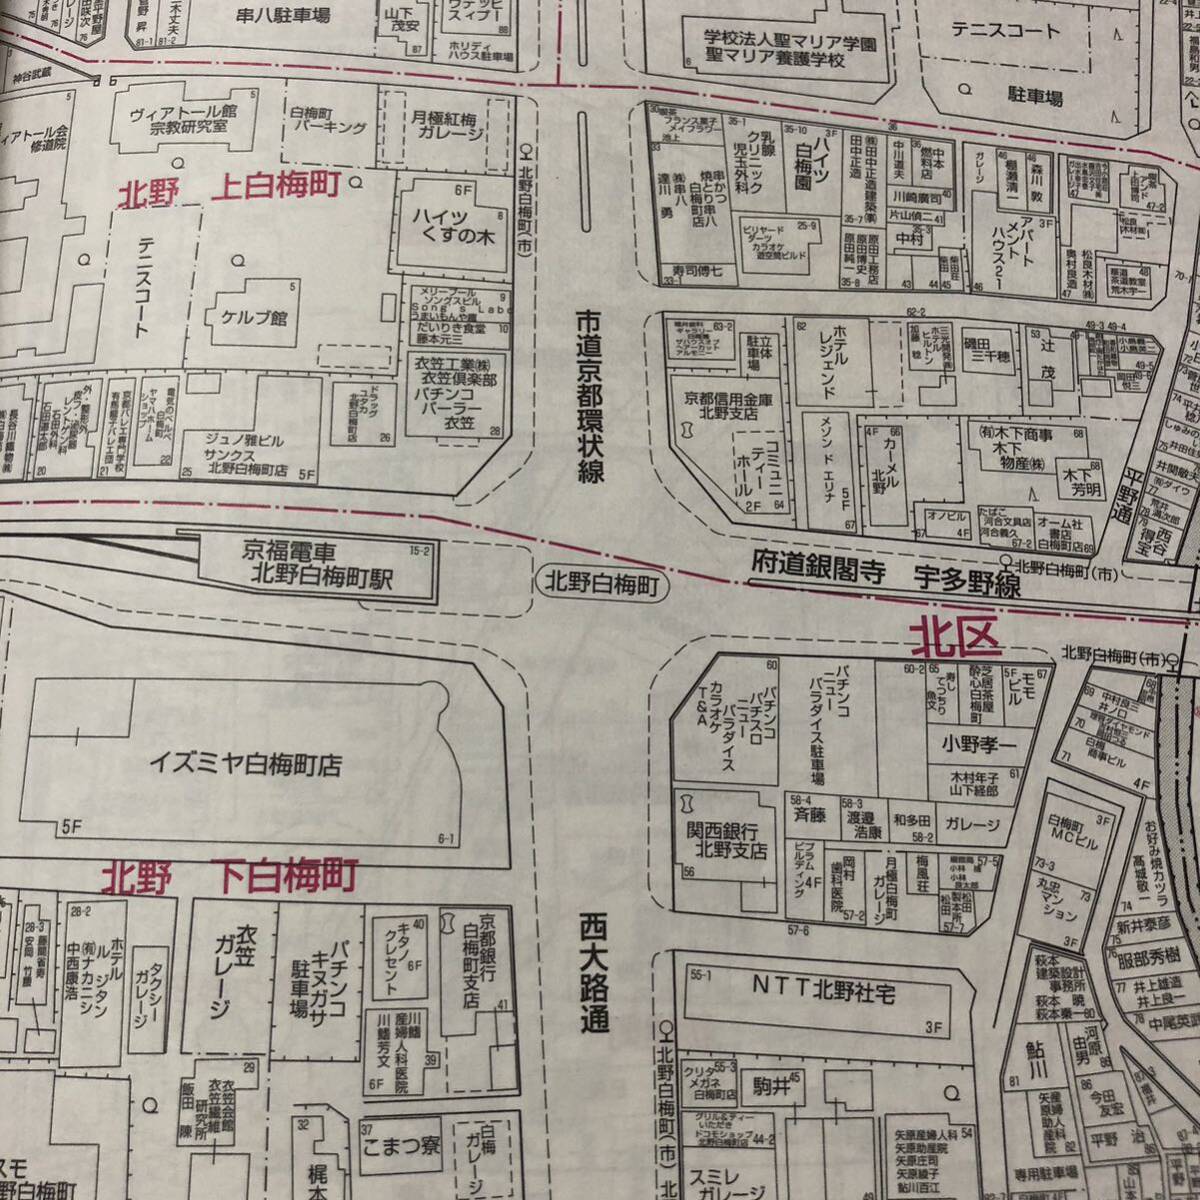 ゼンリン住宅地図 京都市「上京区・中京区」 2000年A4コンパクト版 中古品の画像10